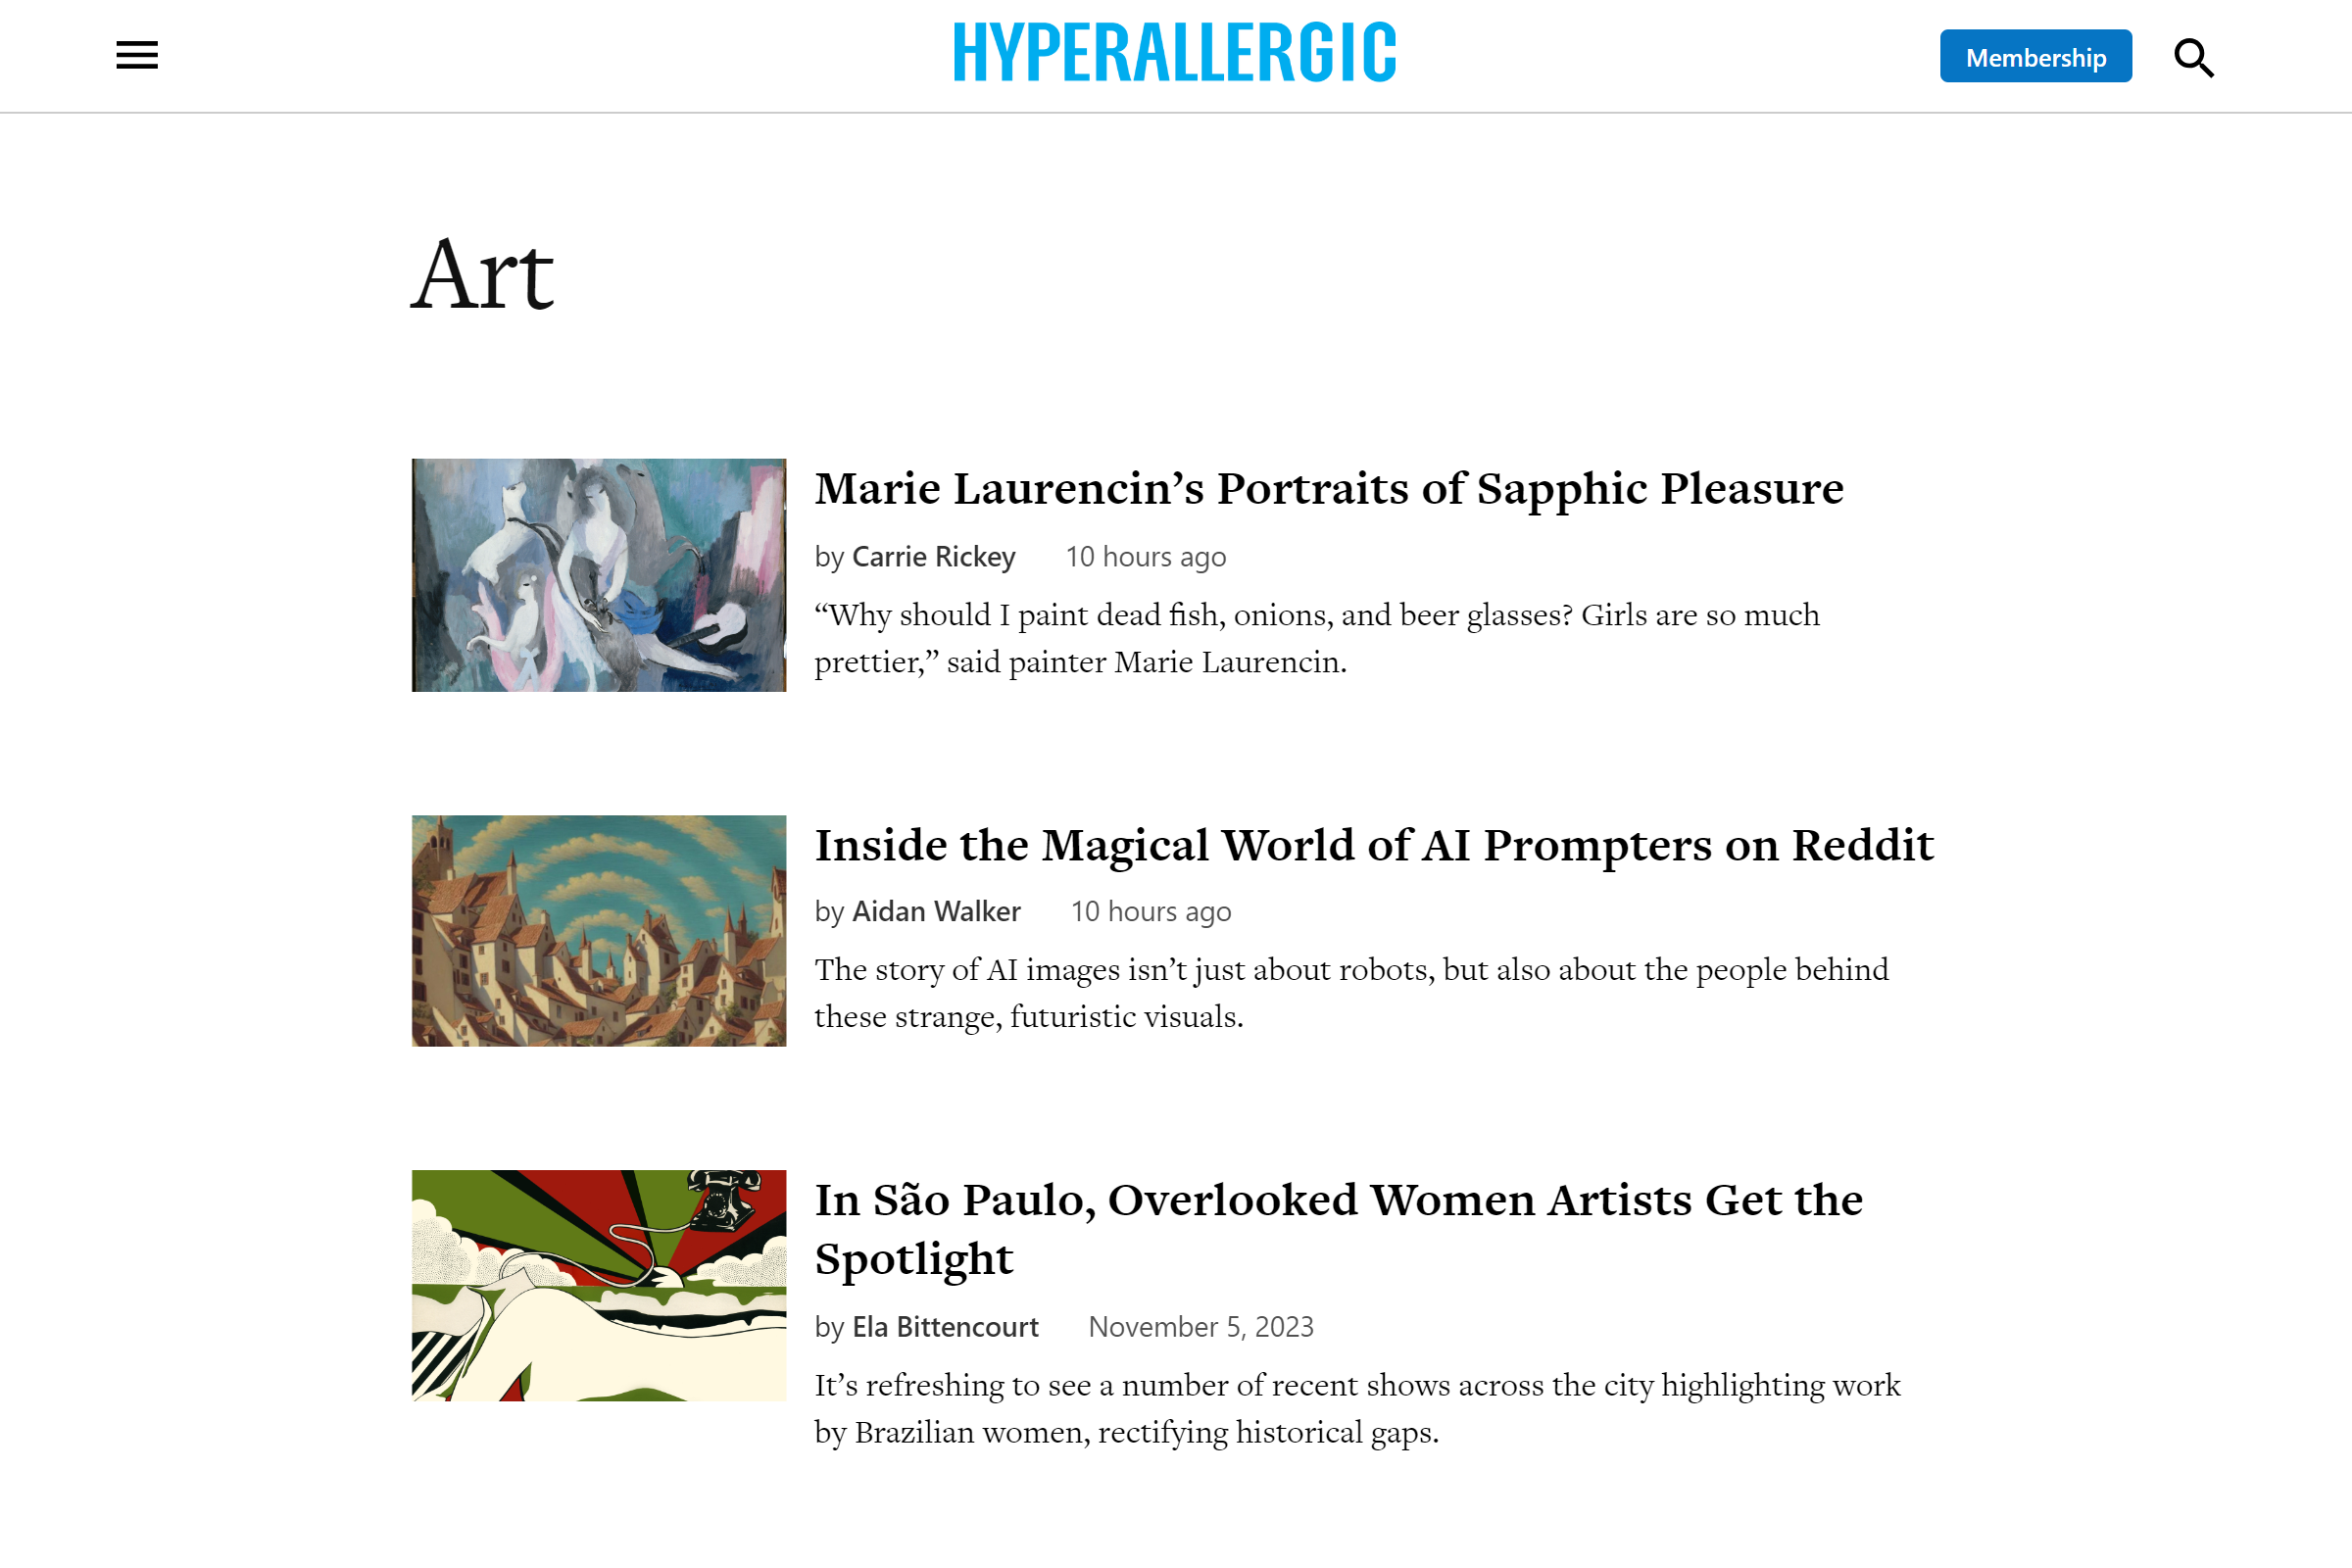 Hyperallergic art blog